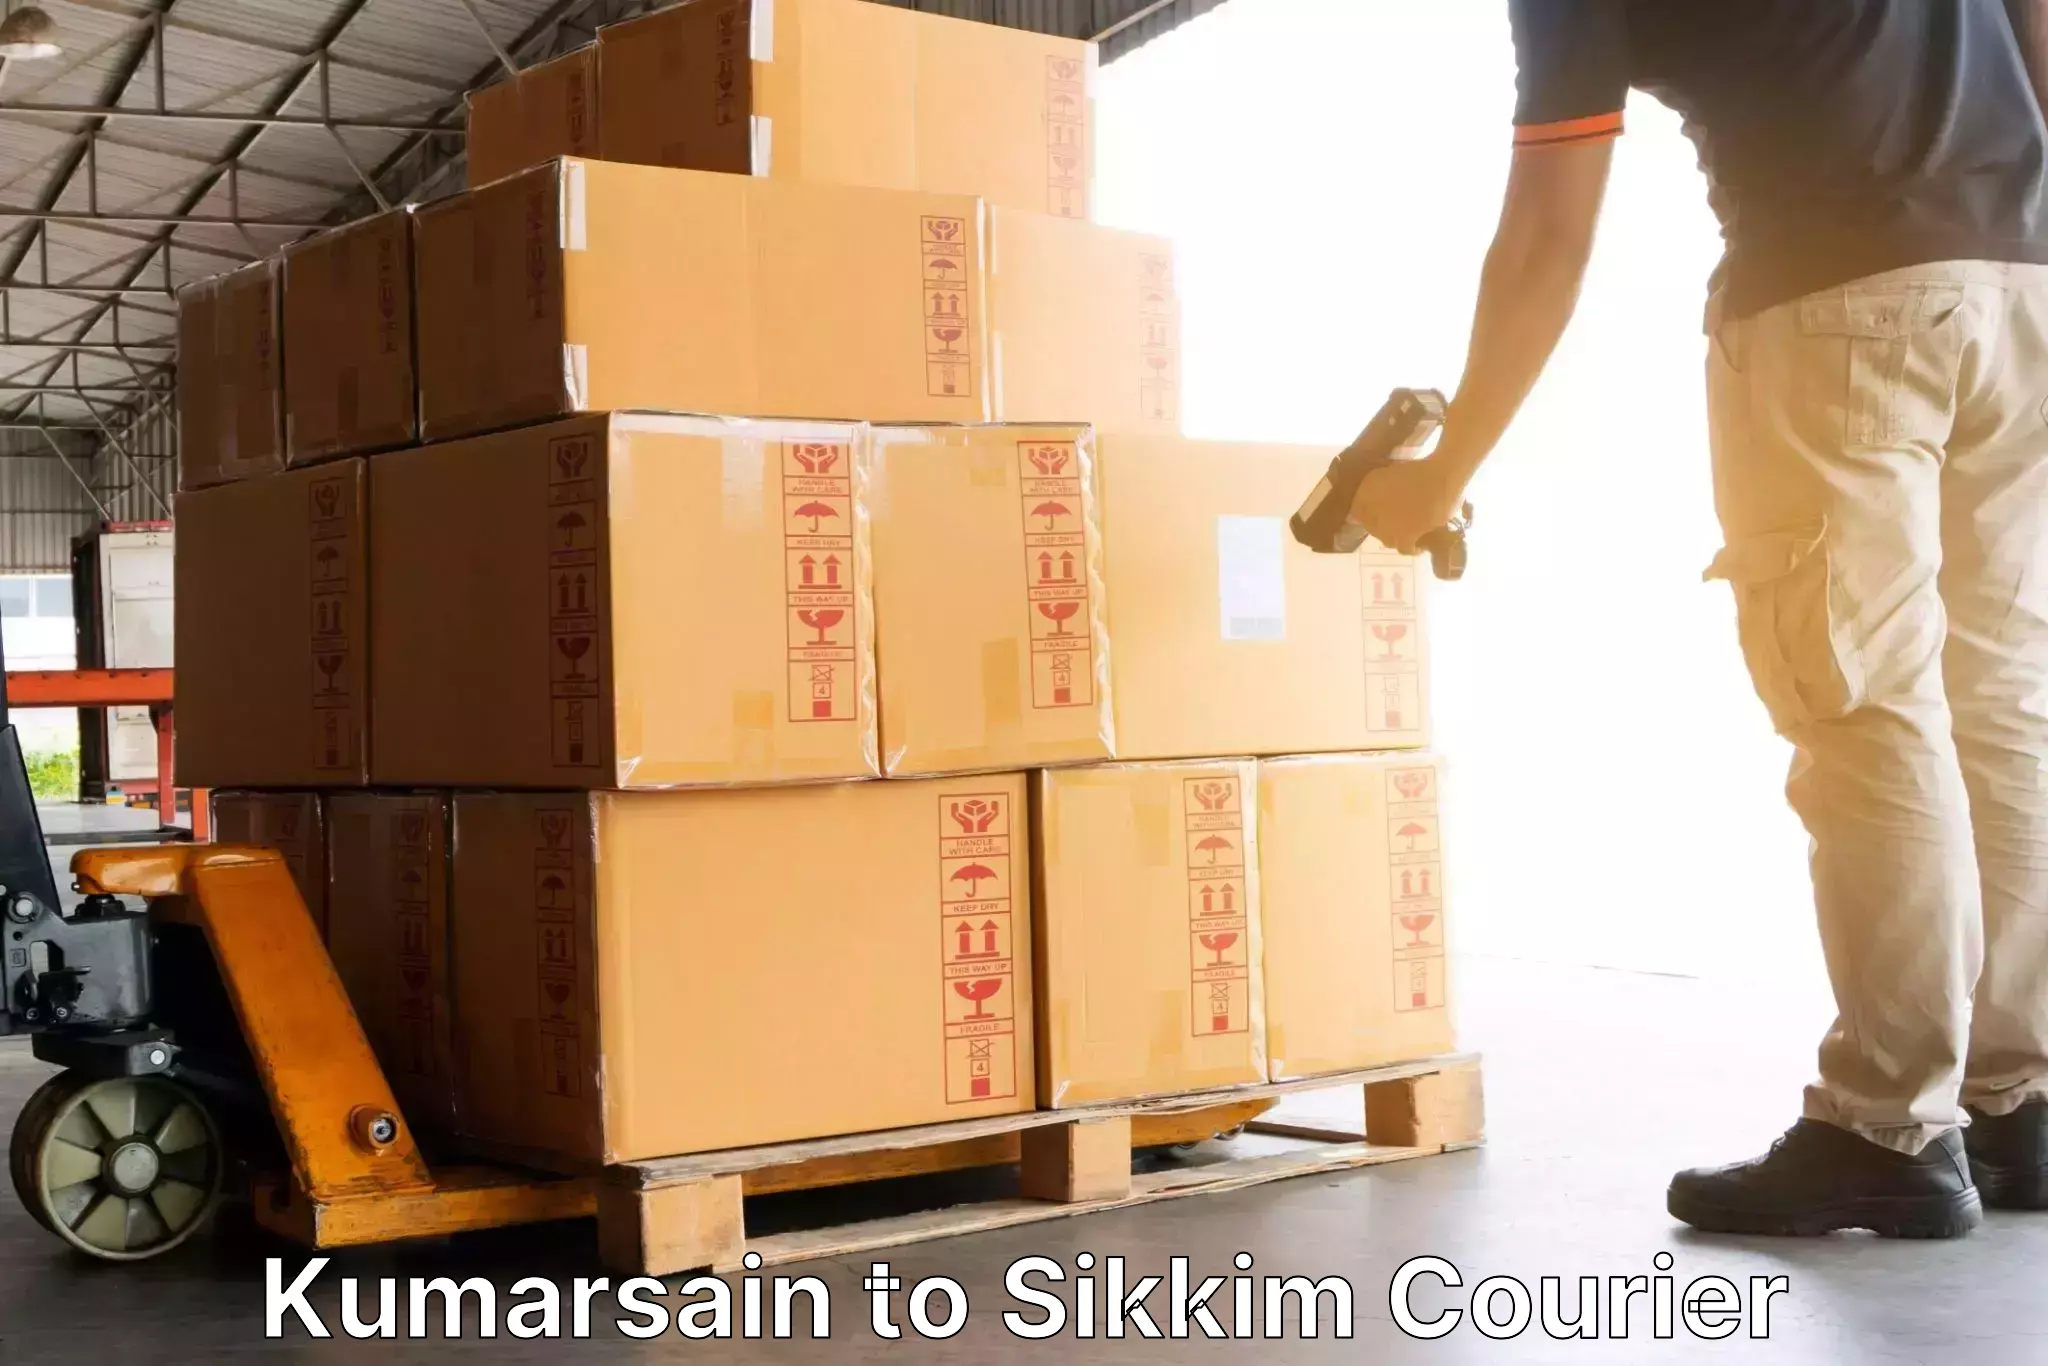 Bulk courier orders in Kumarsain to East Sikkim